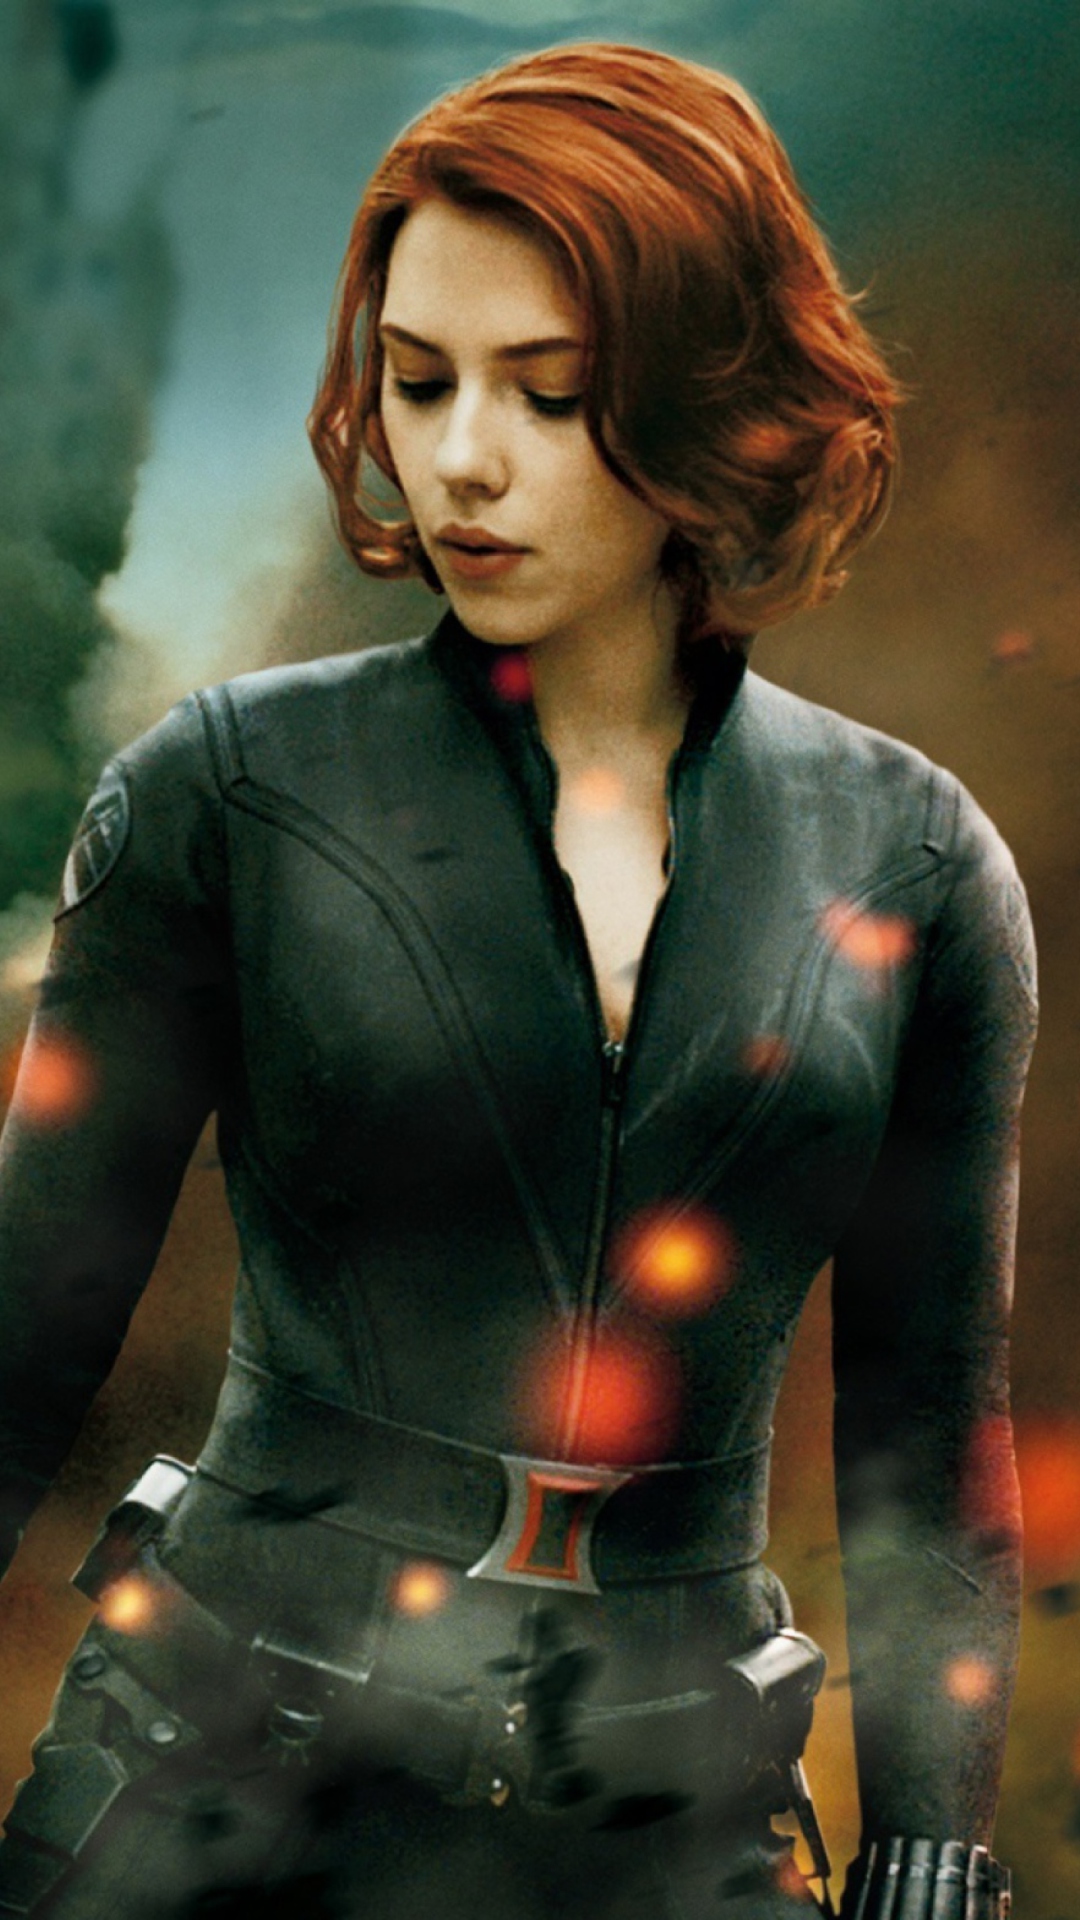 The Avengers - Black Widow wallpaper 1080x1920